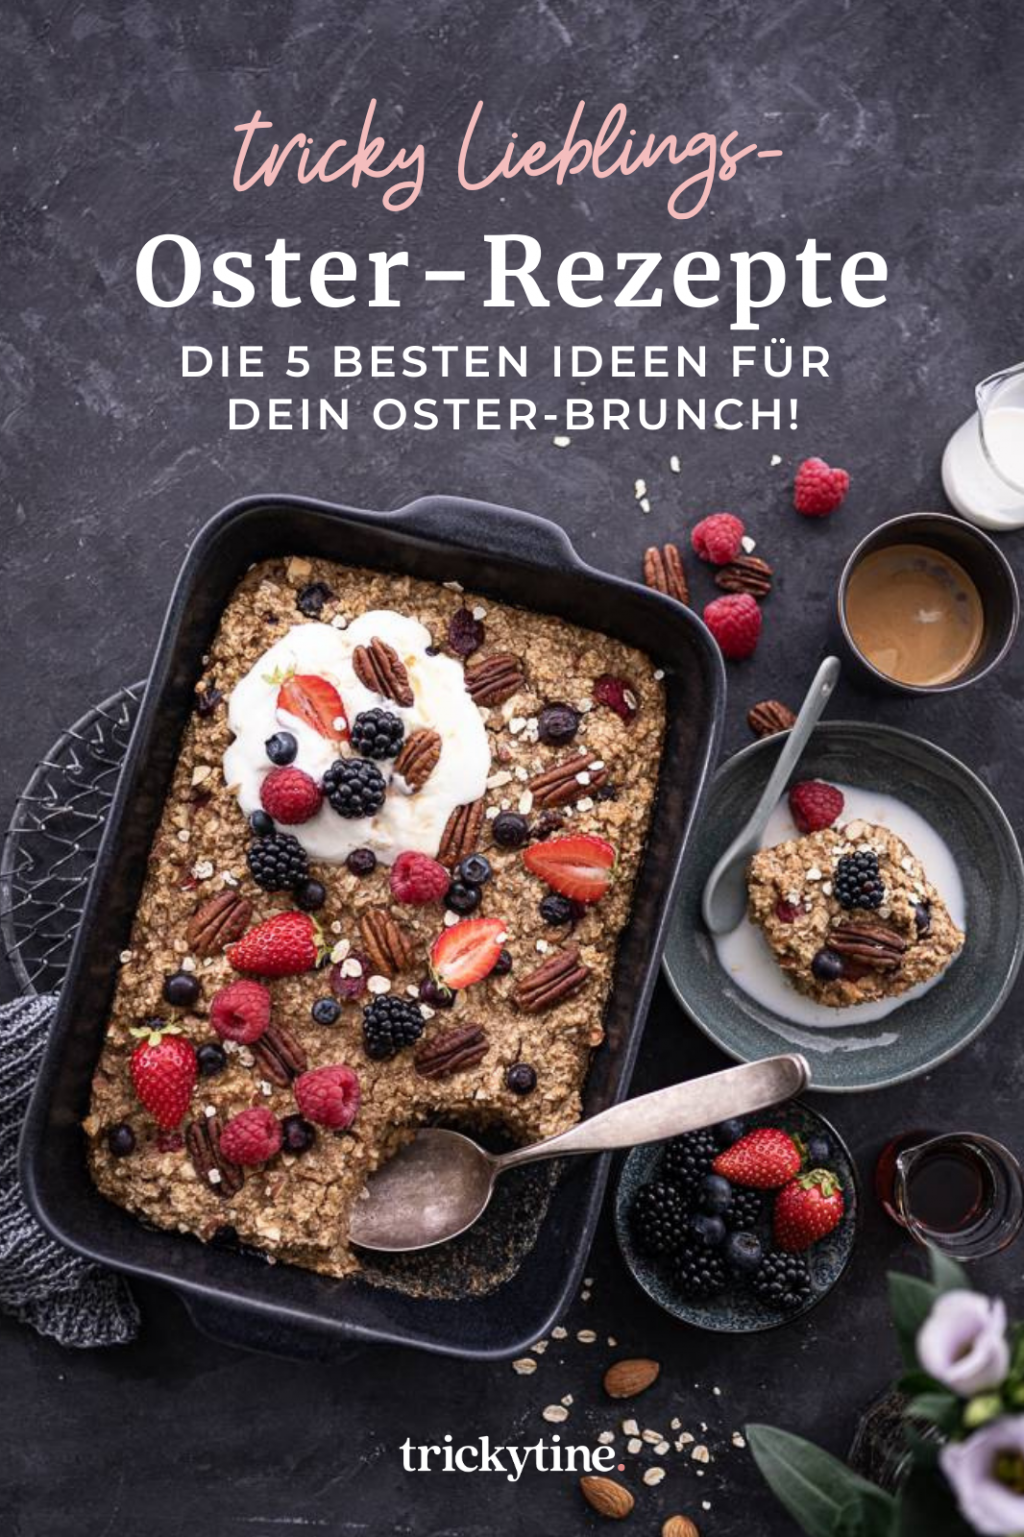 Oster-Rezepte, Baked Oatmeal mit Mandeln & Beeren